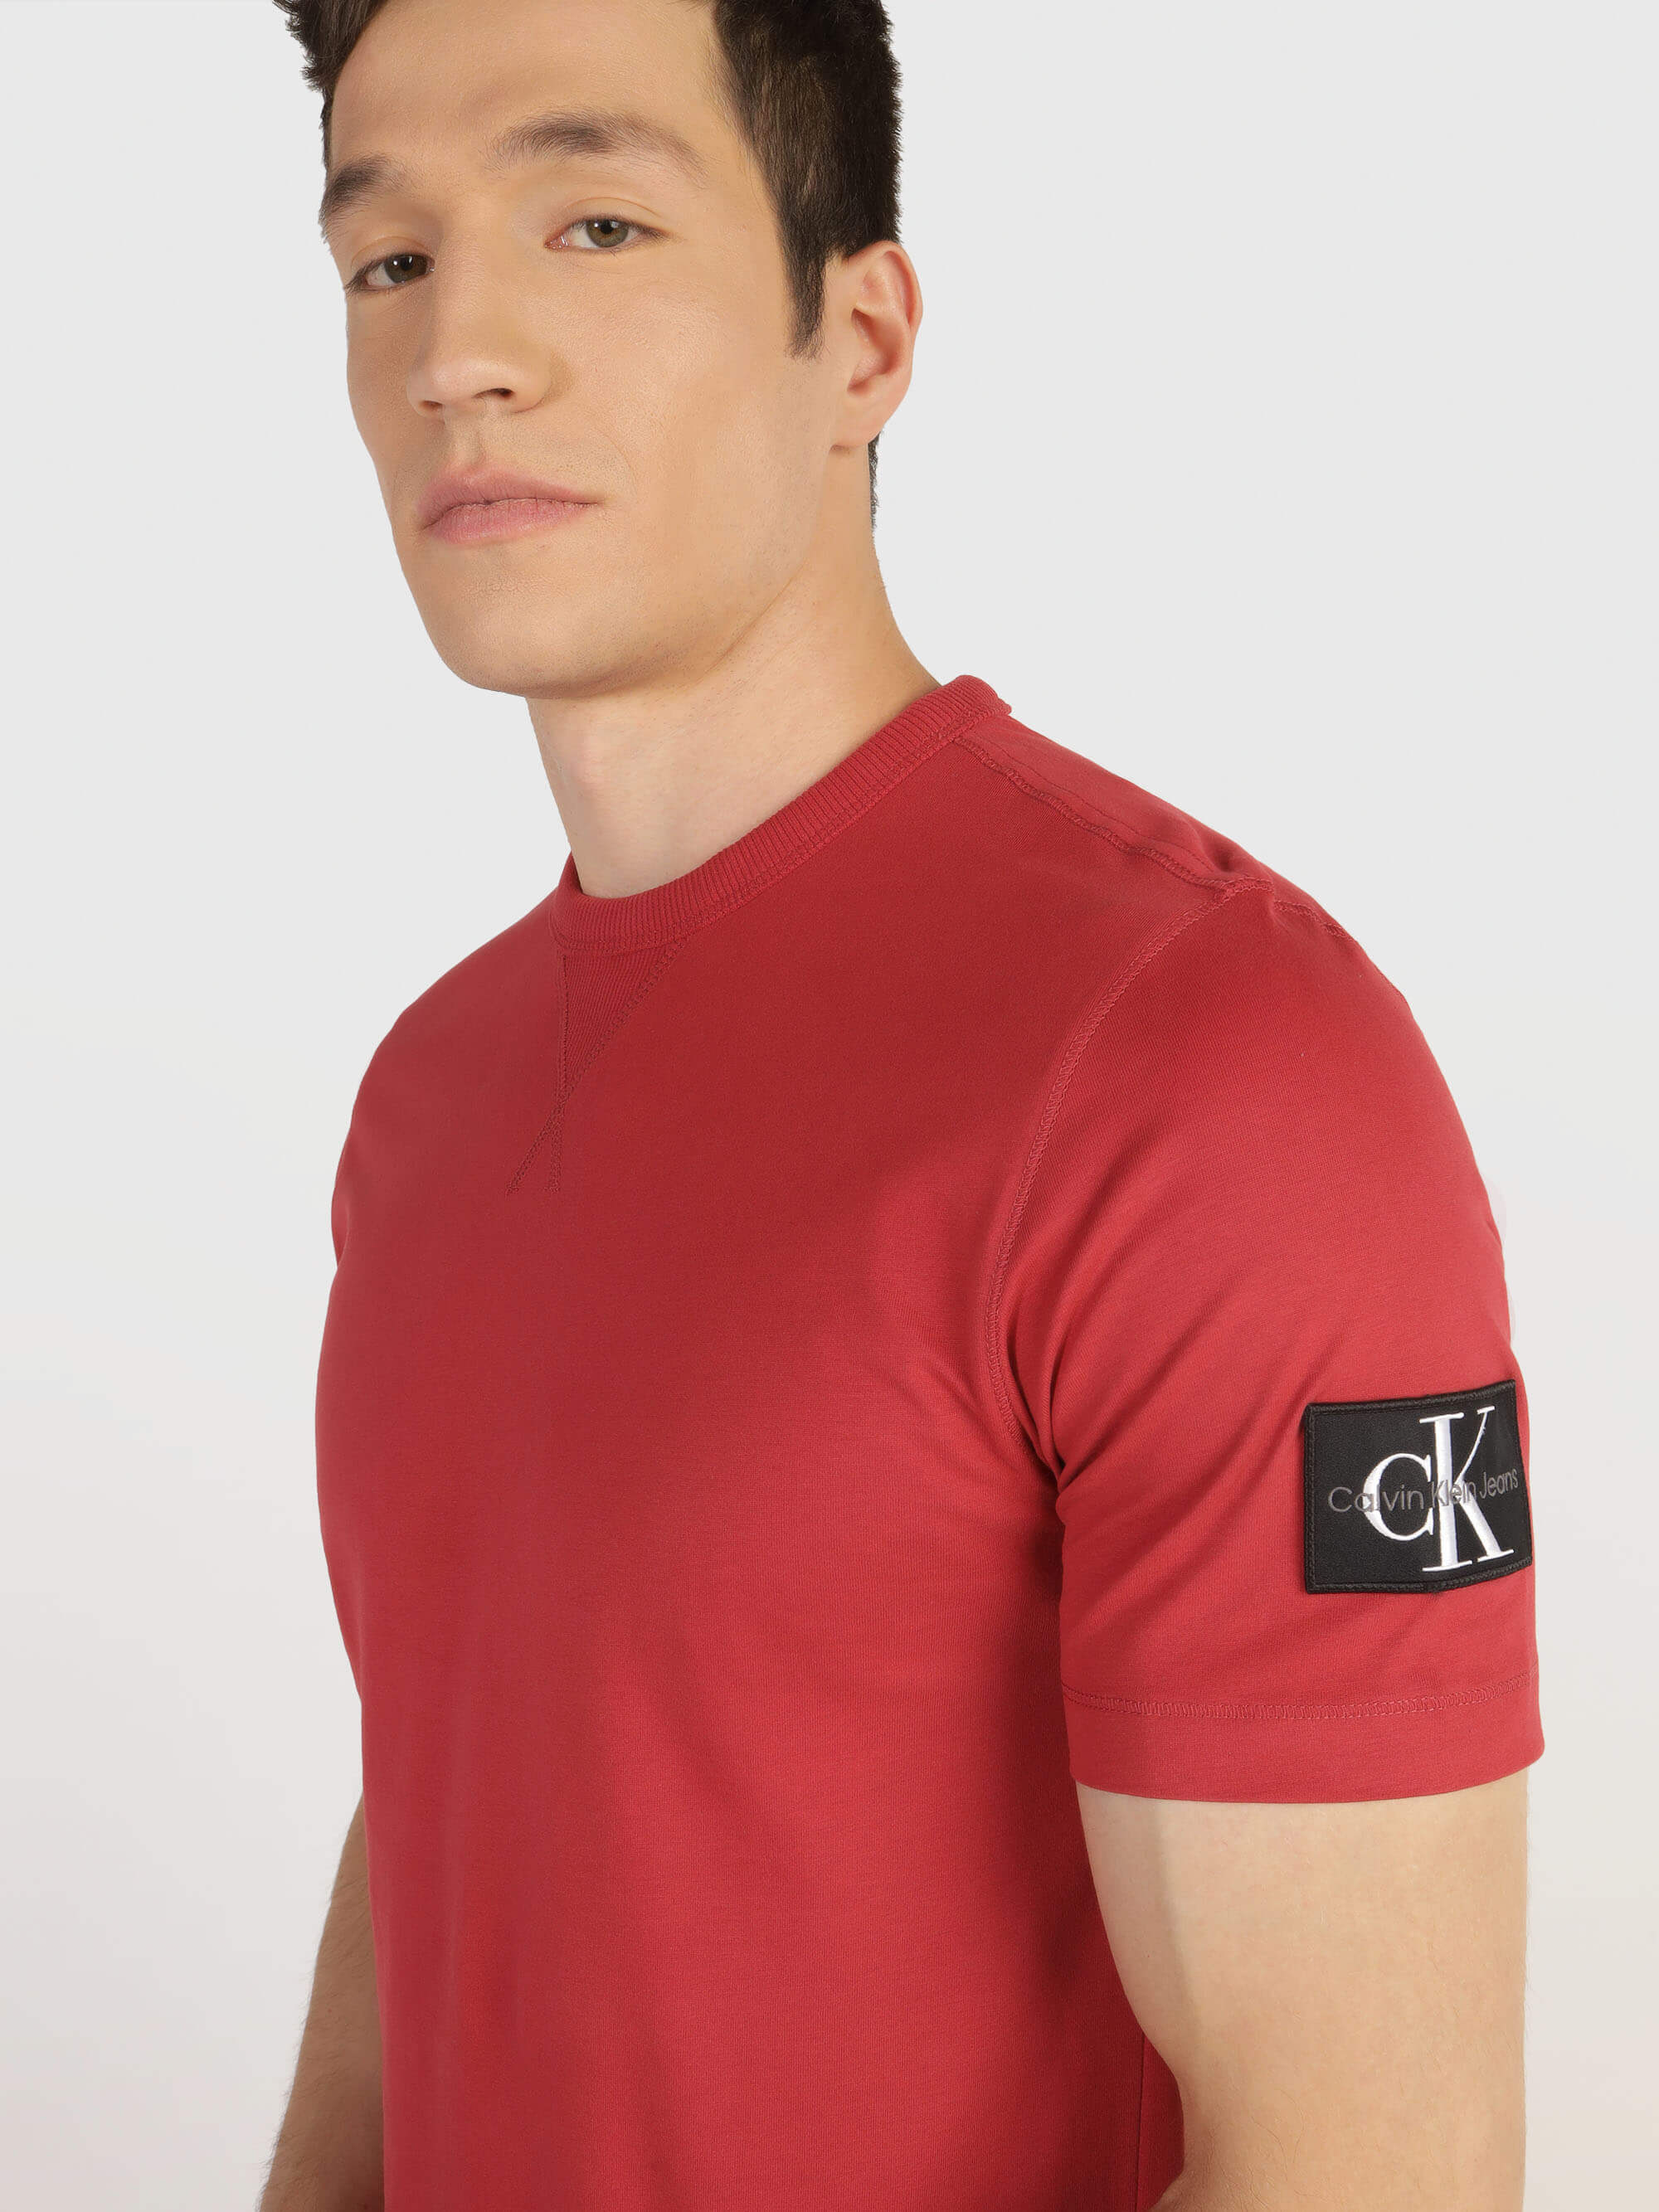 Playera Calvin Klein Logo Hombre Rojo